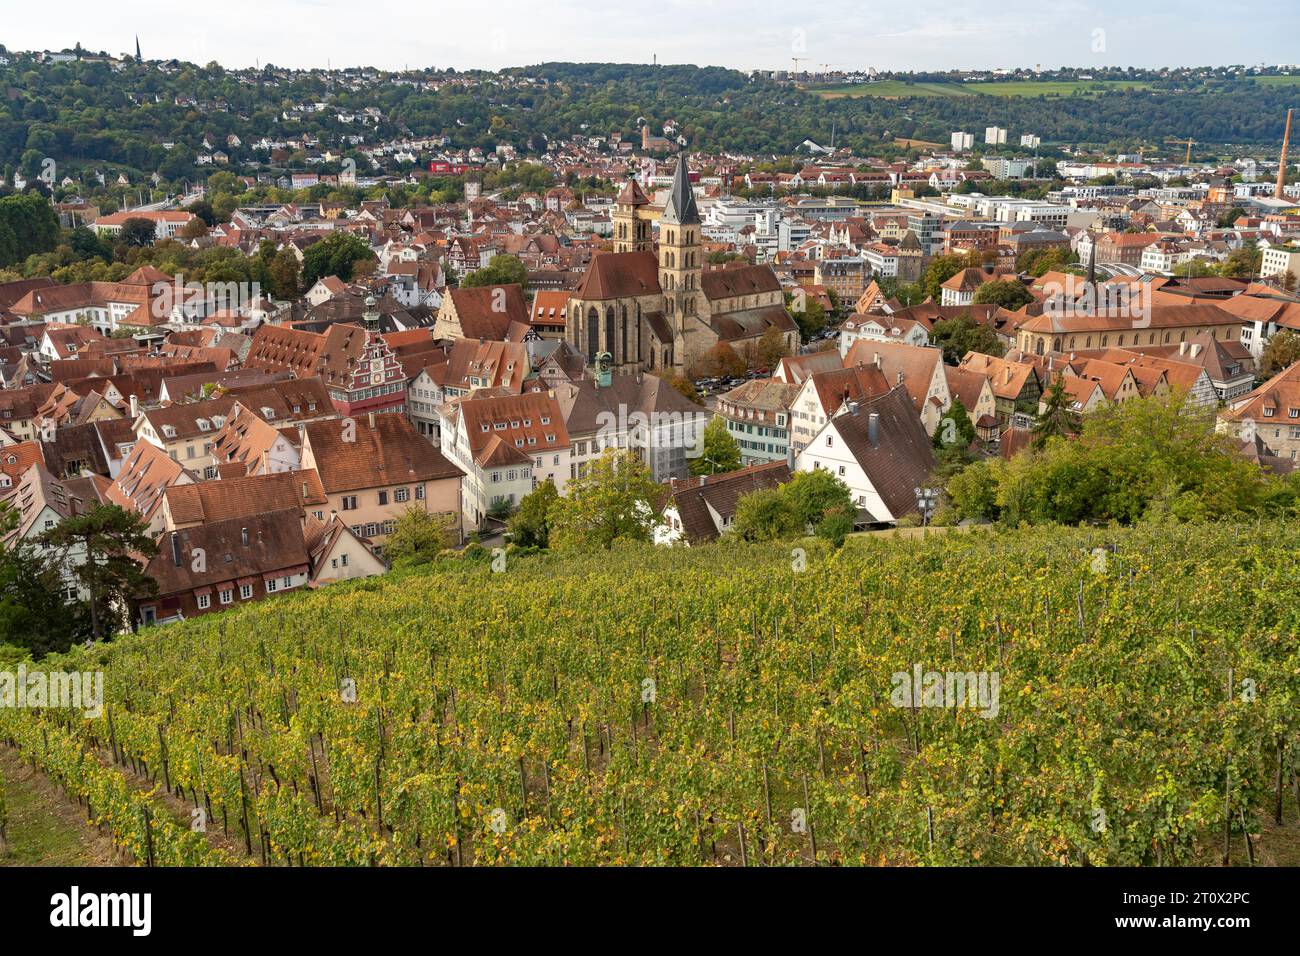 Blick über einen Weinberg auf Esslingen mit der Stadtpfarrkirche St. Dionys Esslingen am Neckar, Baden-Württemberg, Deutschland  |  View over a vineya Stock Photo